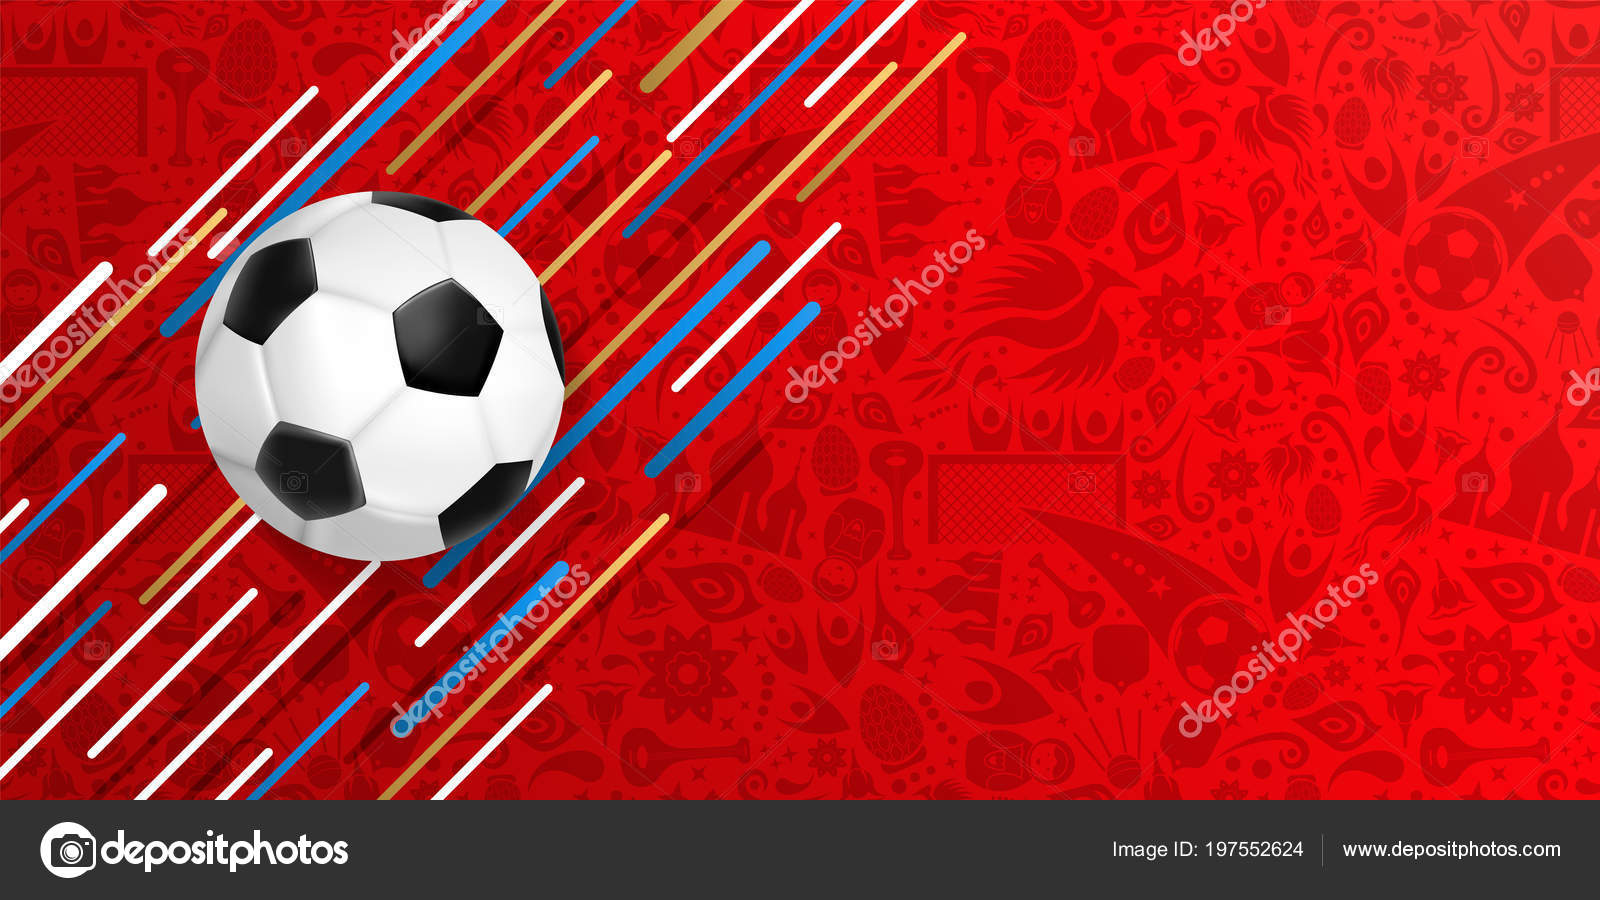 サッカー フットボール ゲーム用バナー リアルな ボールお祝いカラーの背景を持つイラストです Eps10 ベクトル ストックベクター C Cienpies